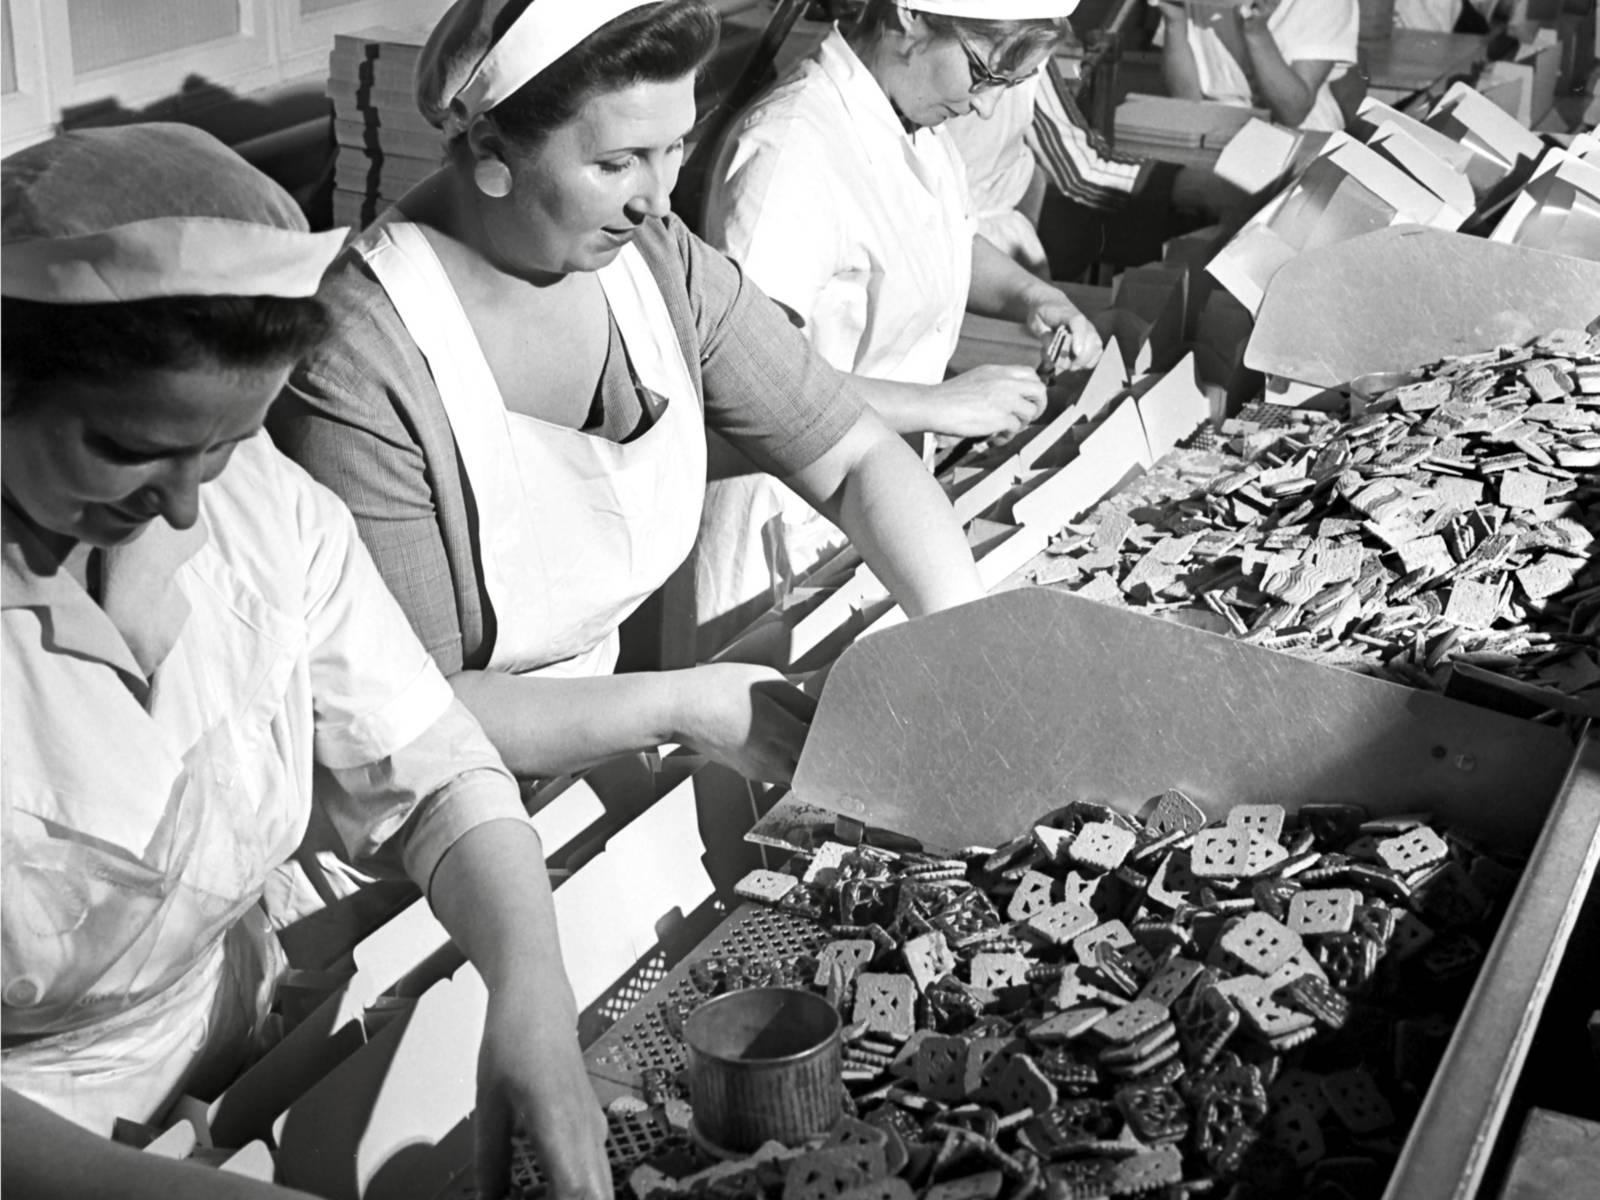 Schwarz-Weiß-Fotografie: Frauen sitzen nebeneinander und sortieren Kekse.